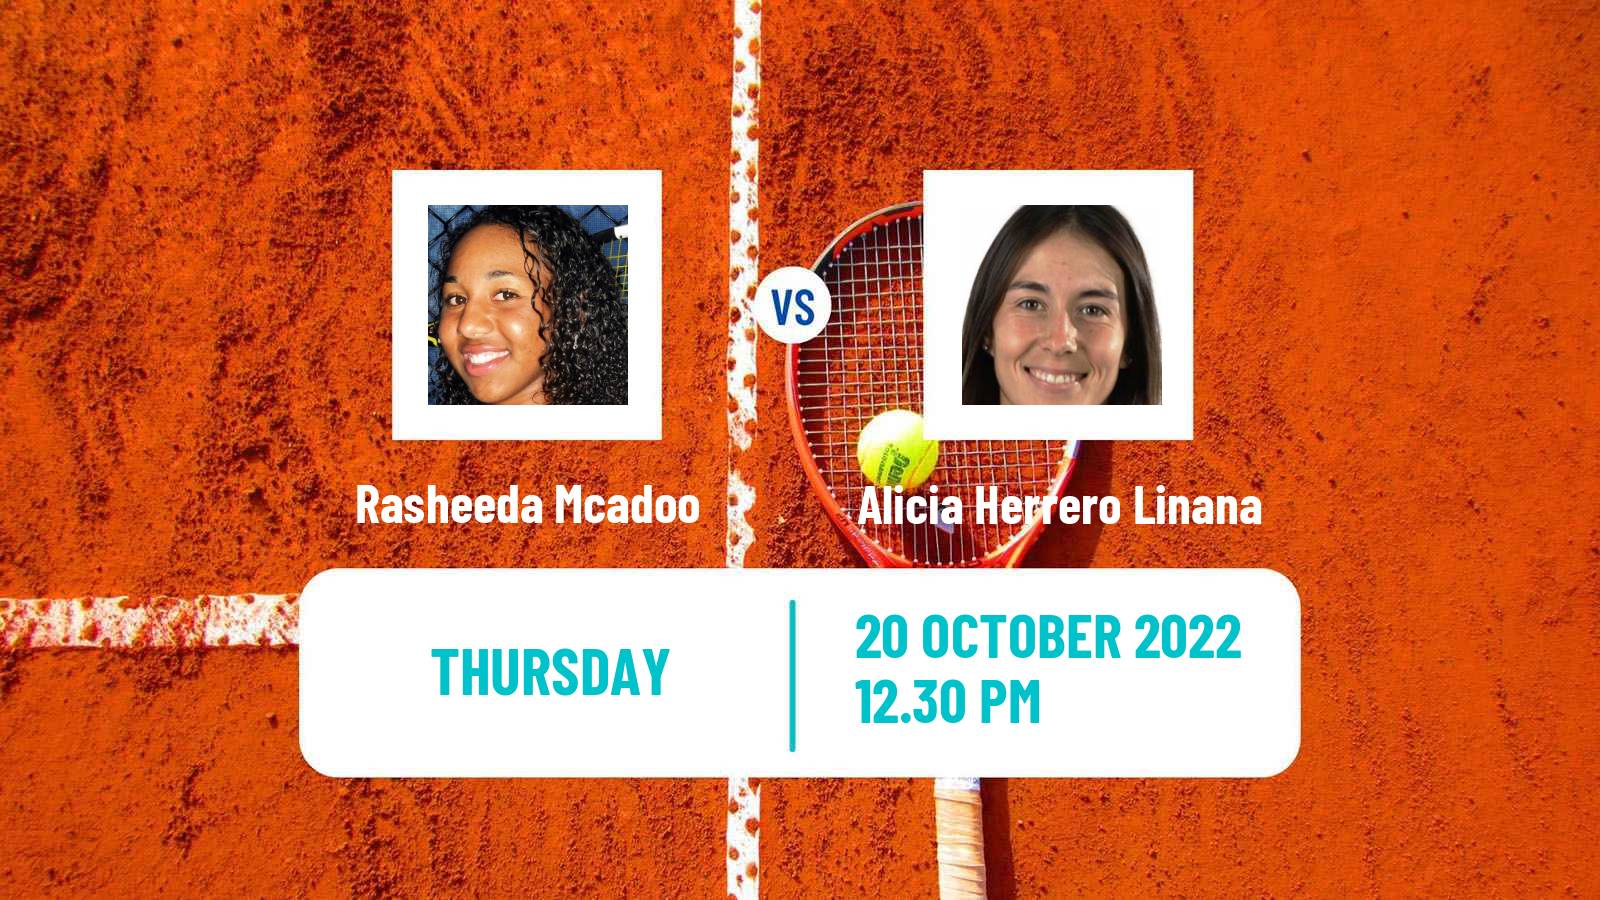 Tennis ITF Tournaments Rasheeda Mcadoo - Alicia Herrero Linana